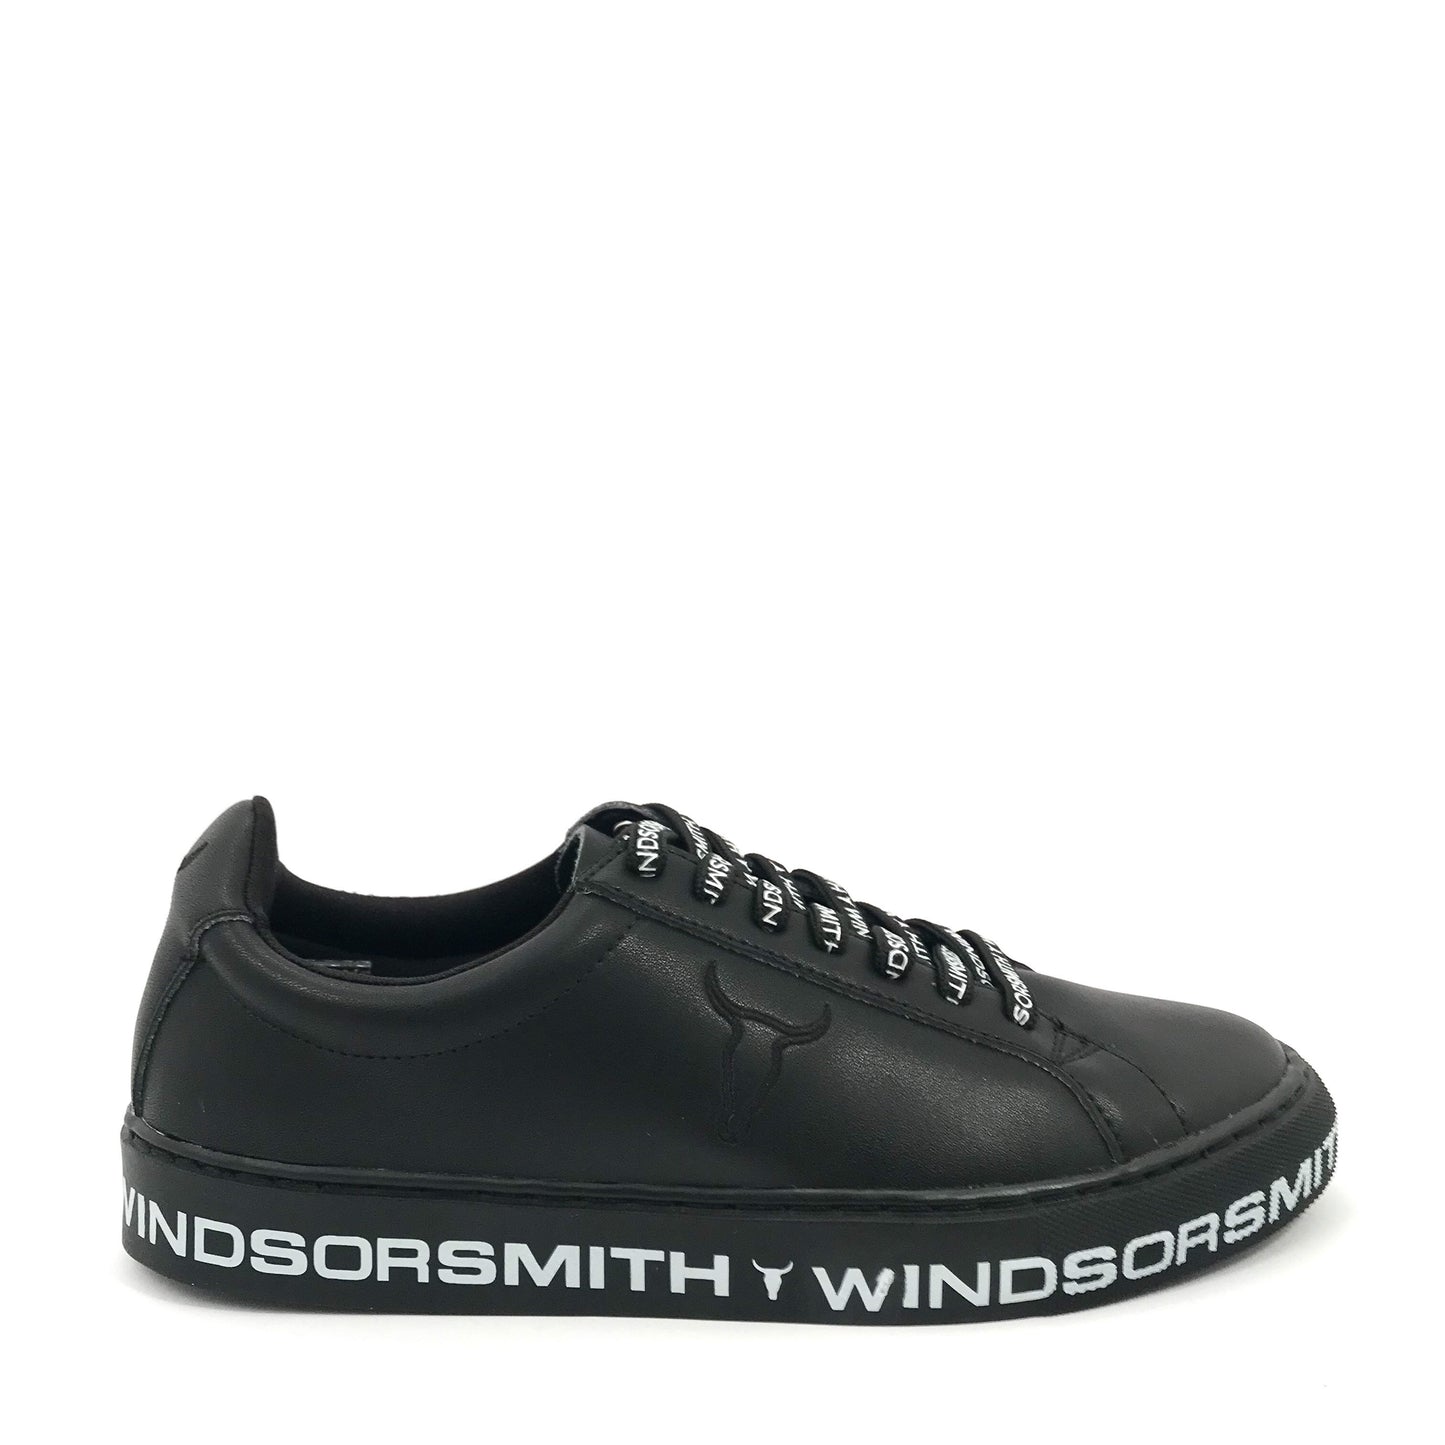 Windsor Smith Amalia Sneakers